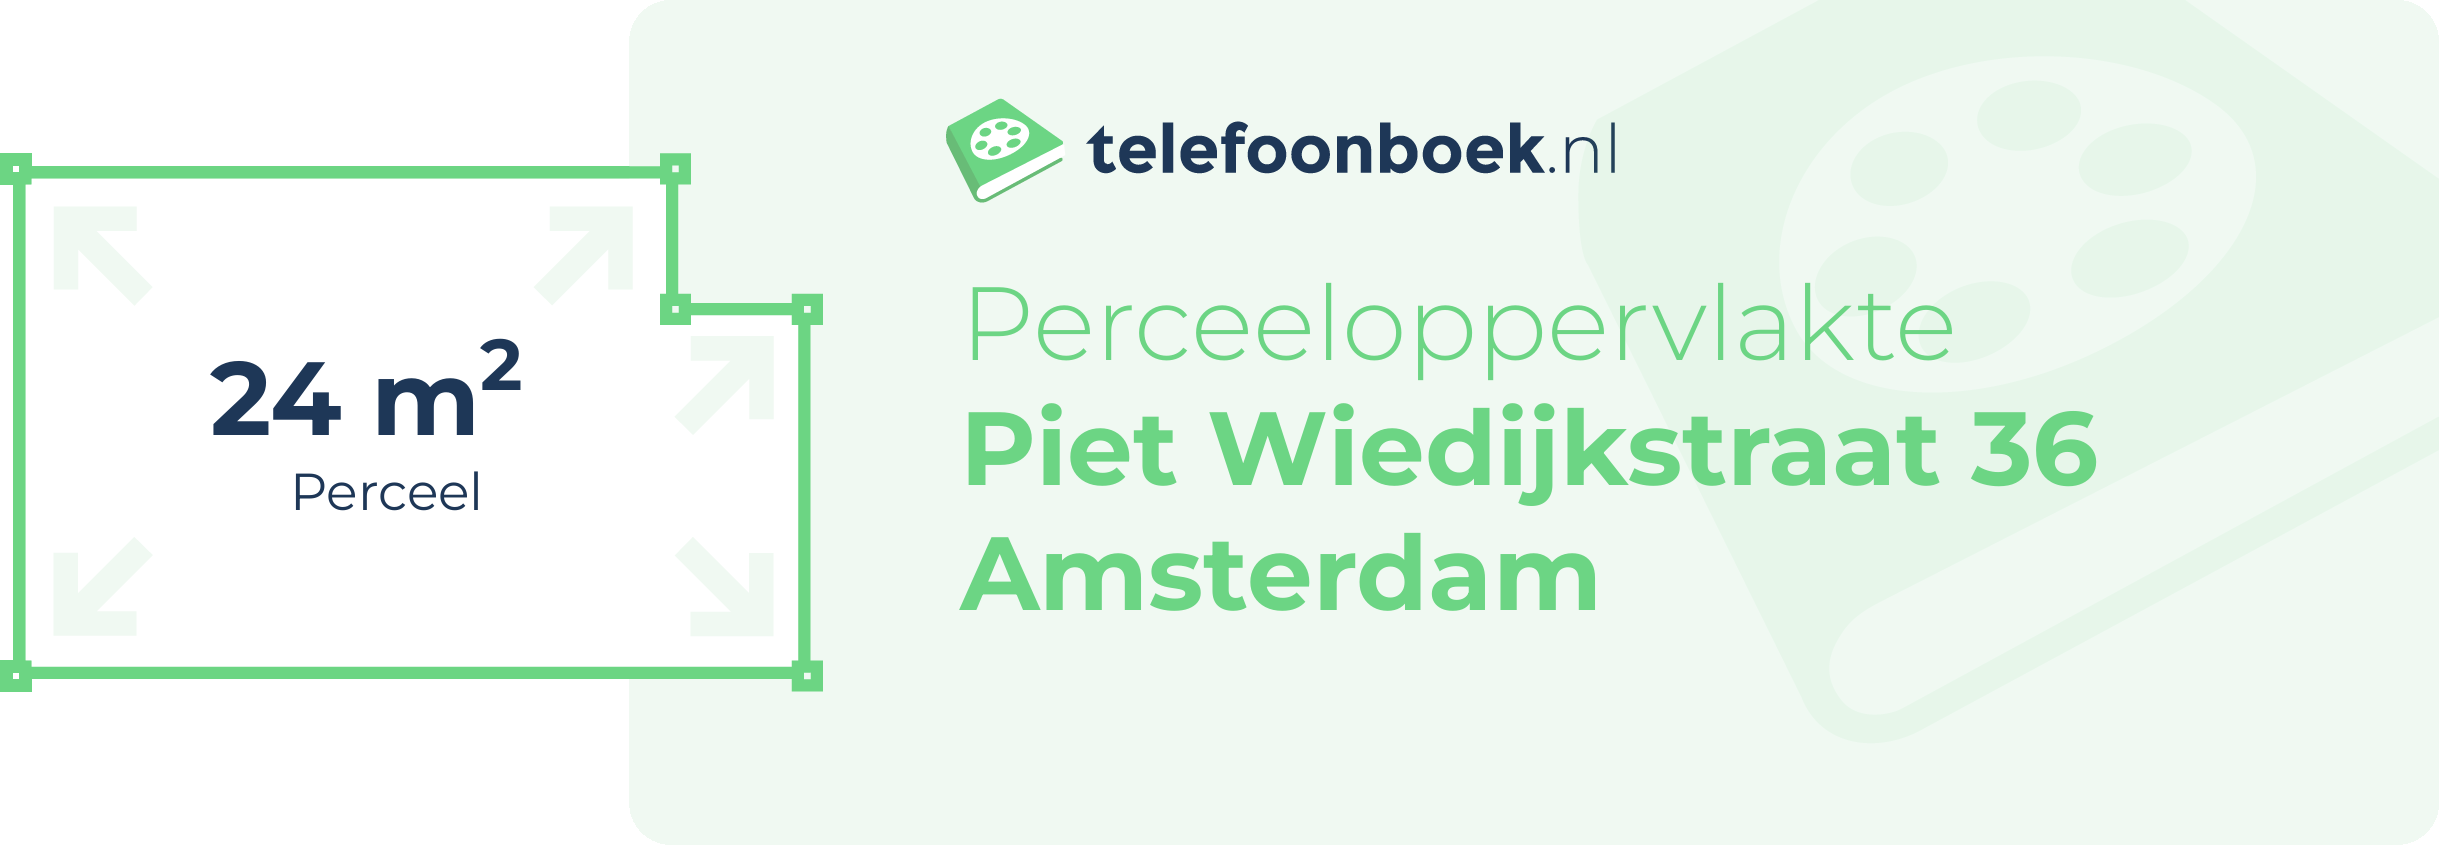 Perceeloppervlakte Piet Wiedijkstraat 36 Amsterdam